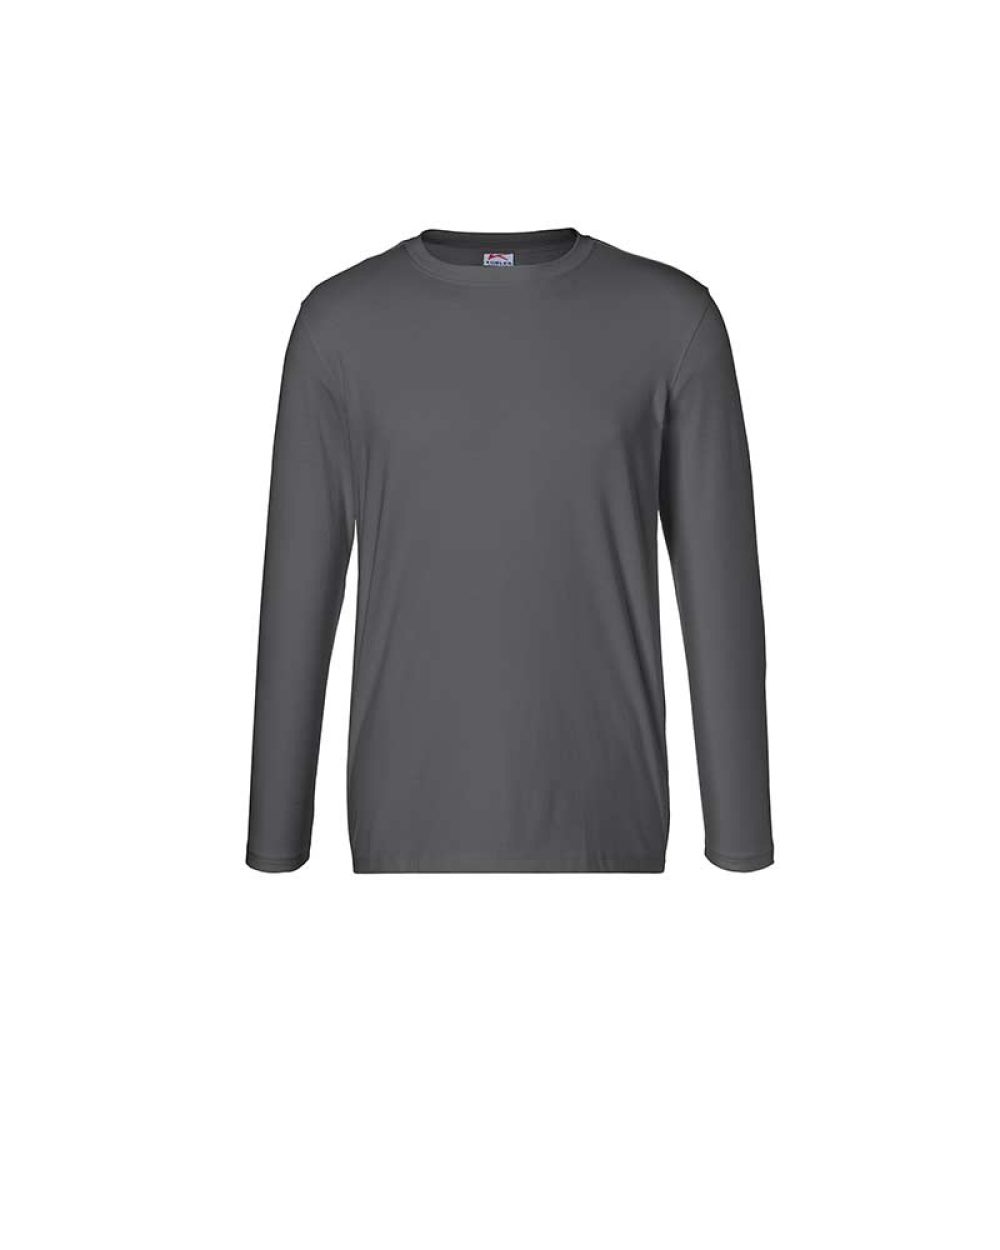 kuebler-langarm-t-shirt-shirts-5025-6240-97